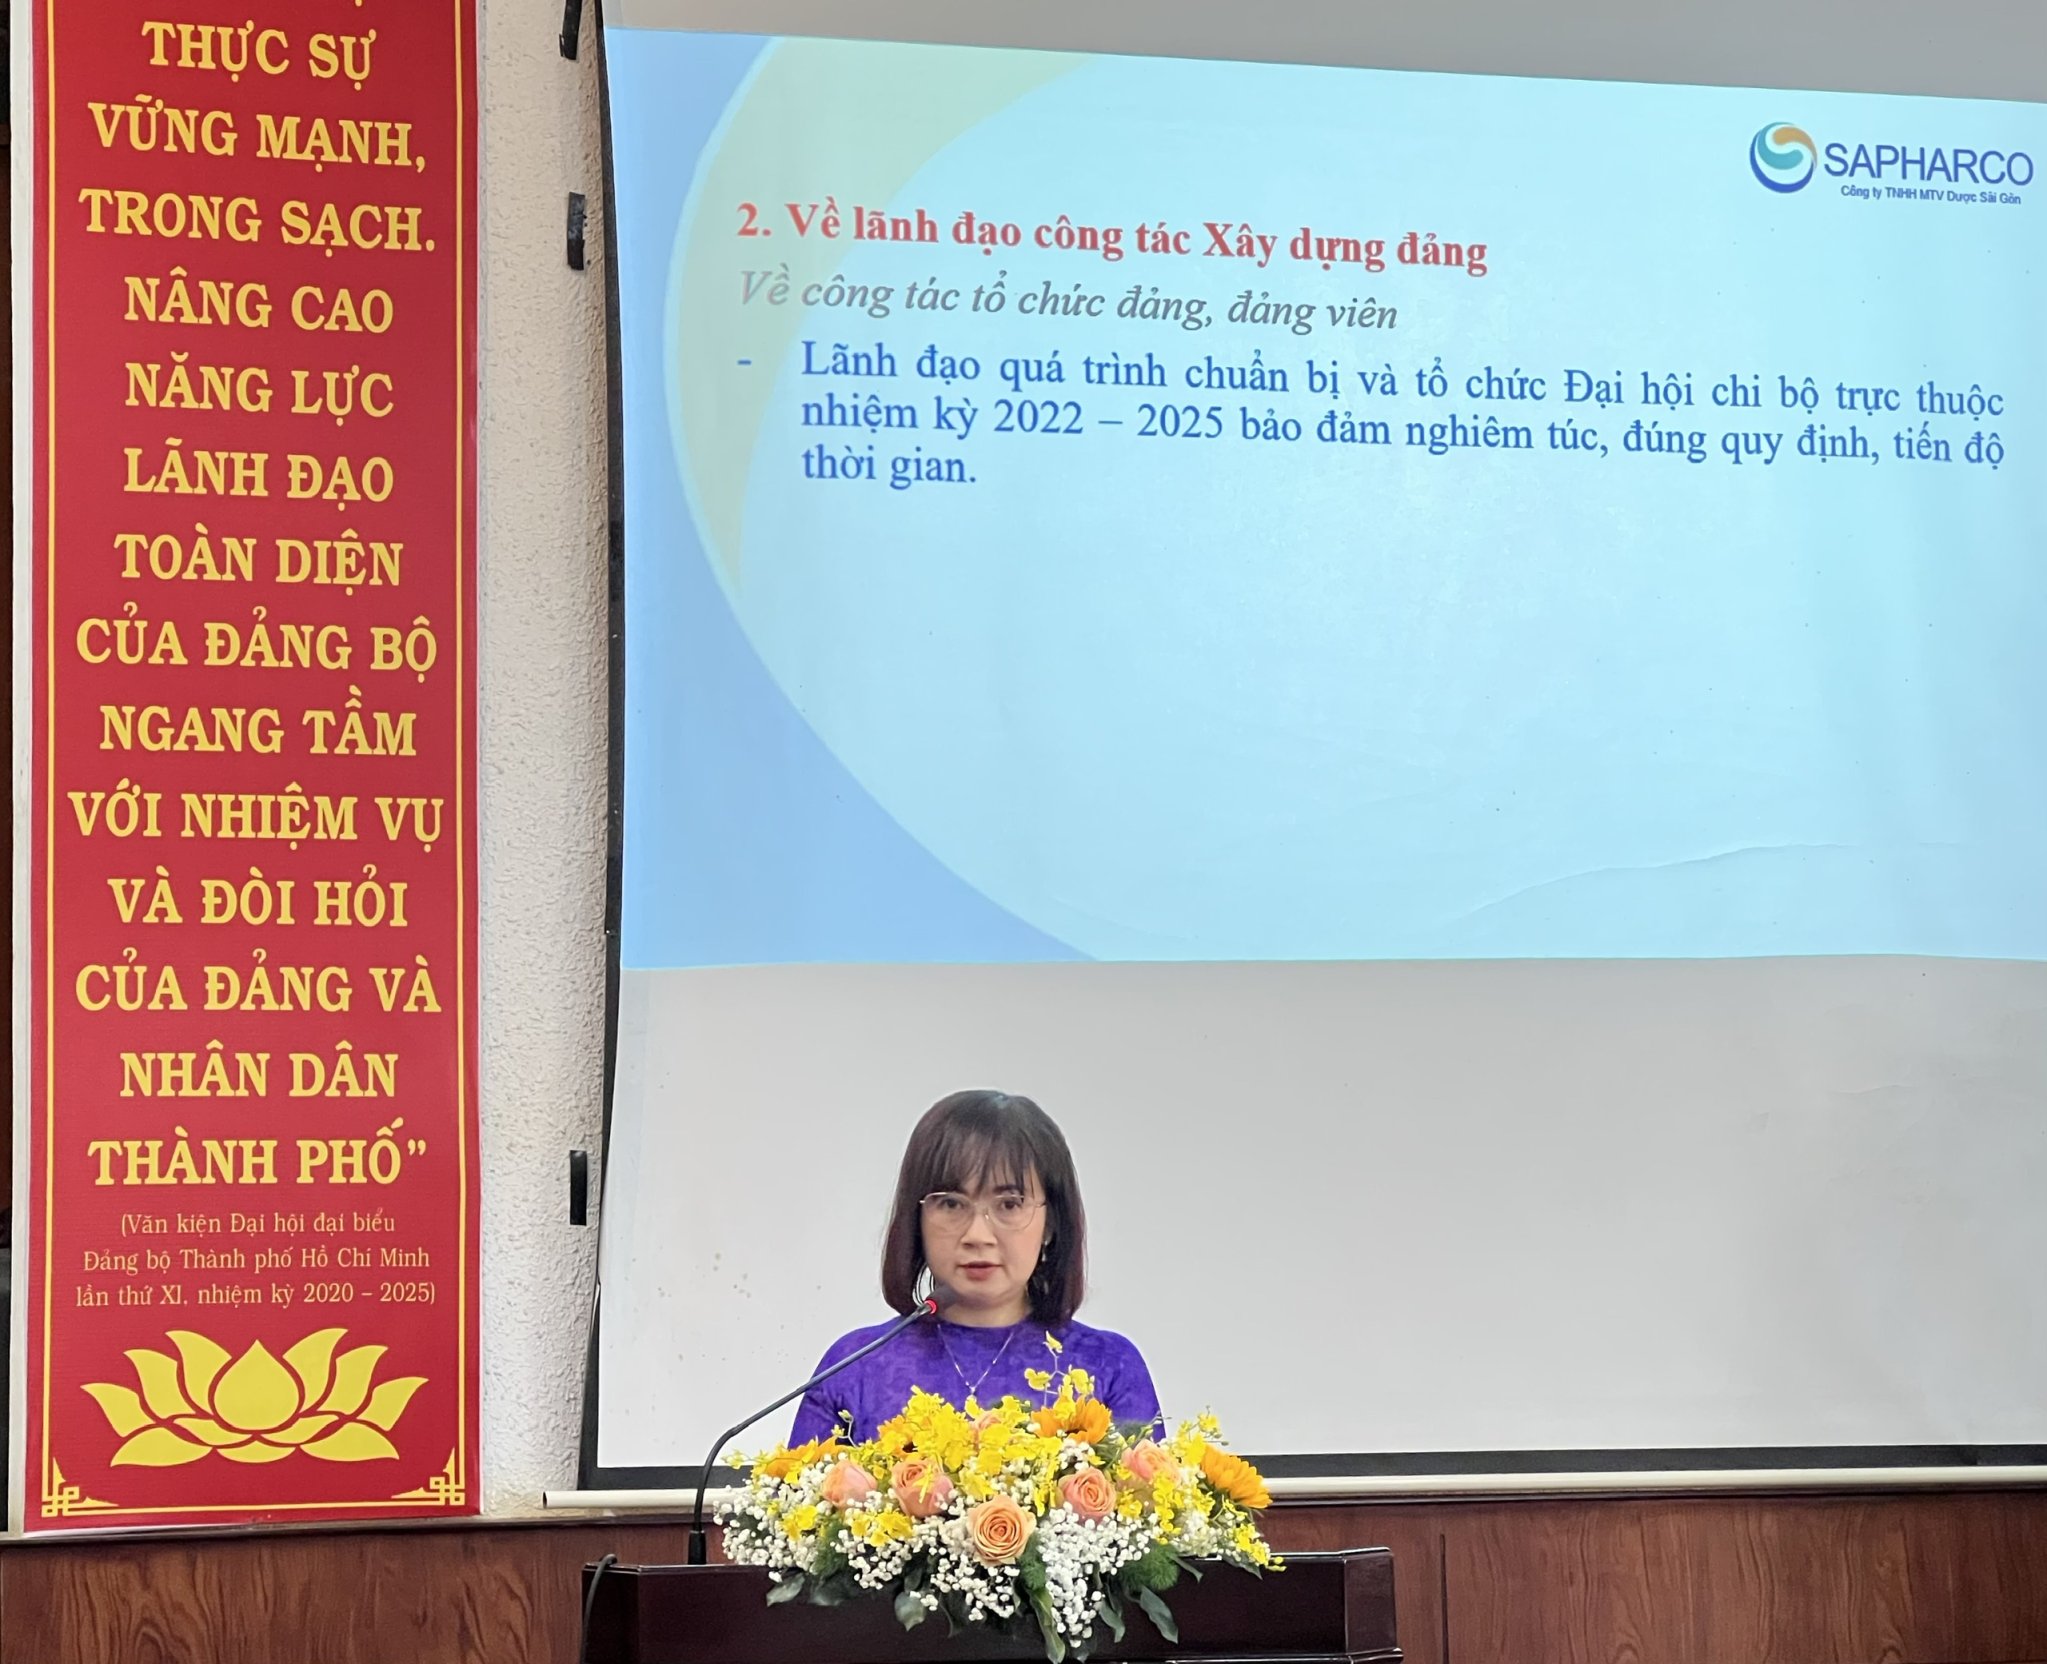 Sapharco tổ chức Lễ kỷ niệm 93 năm Ngày thành lập Đảng Cộng sản Việt Nam, trao tặng Huy hiệu Đảng, tổng kết công tác xây dựng Đảng năm 2022, triển khai phương hướng và nhiệm vụ năm 2023